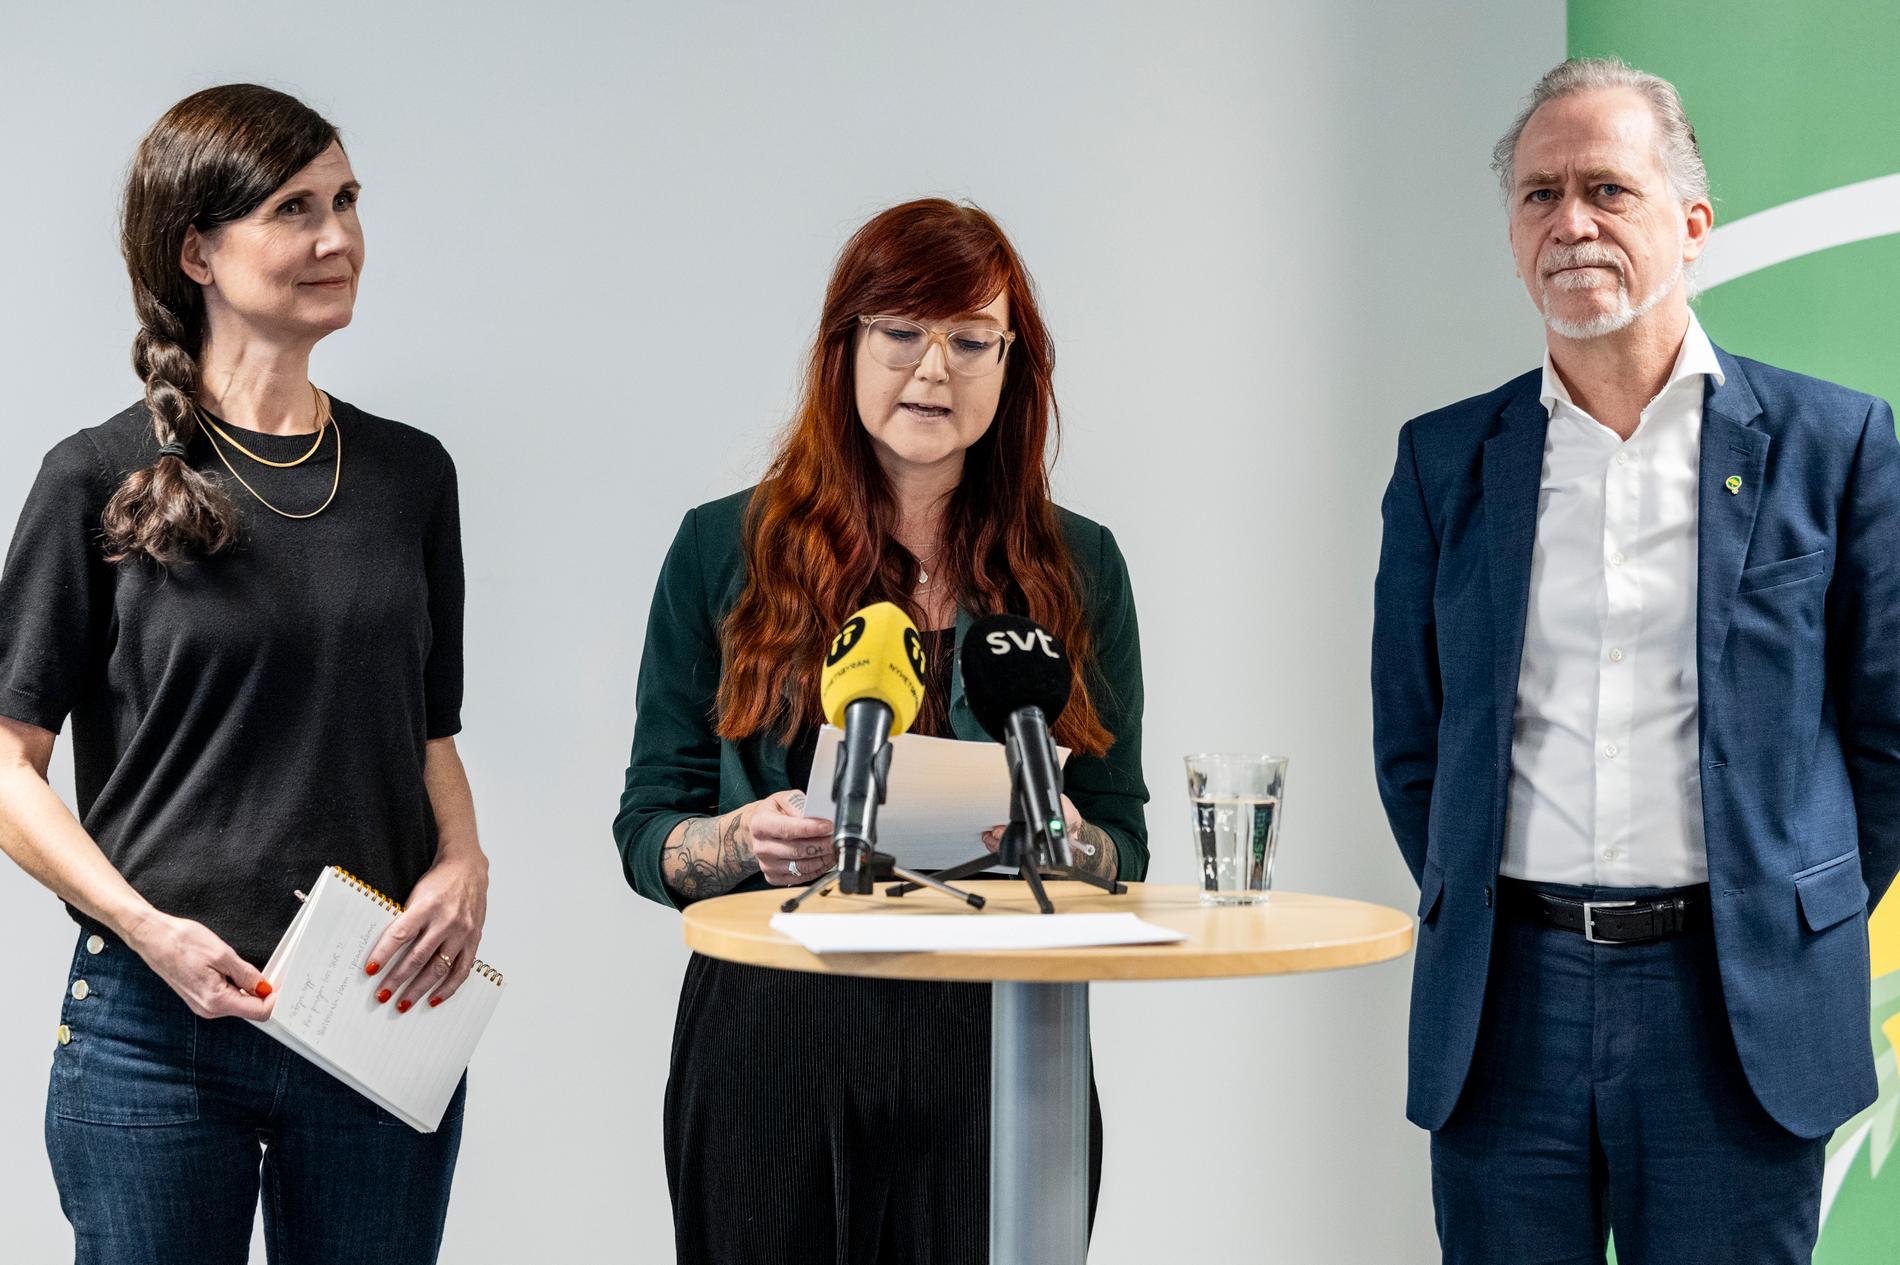 Märta Stenevi, Louise Arndt och Daniel Helldén under Miljöpartiets presskonferens.